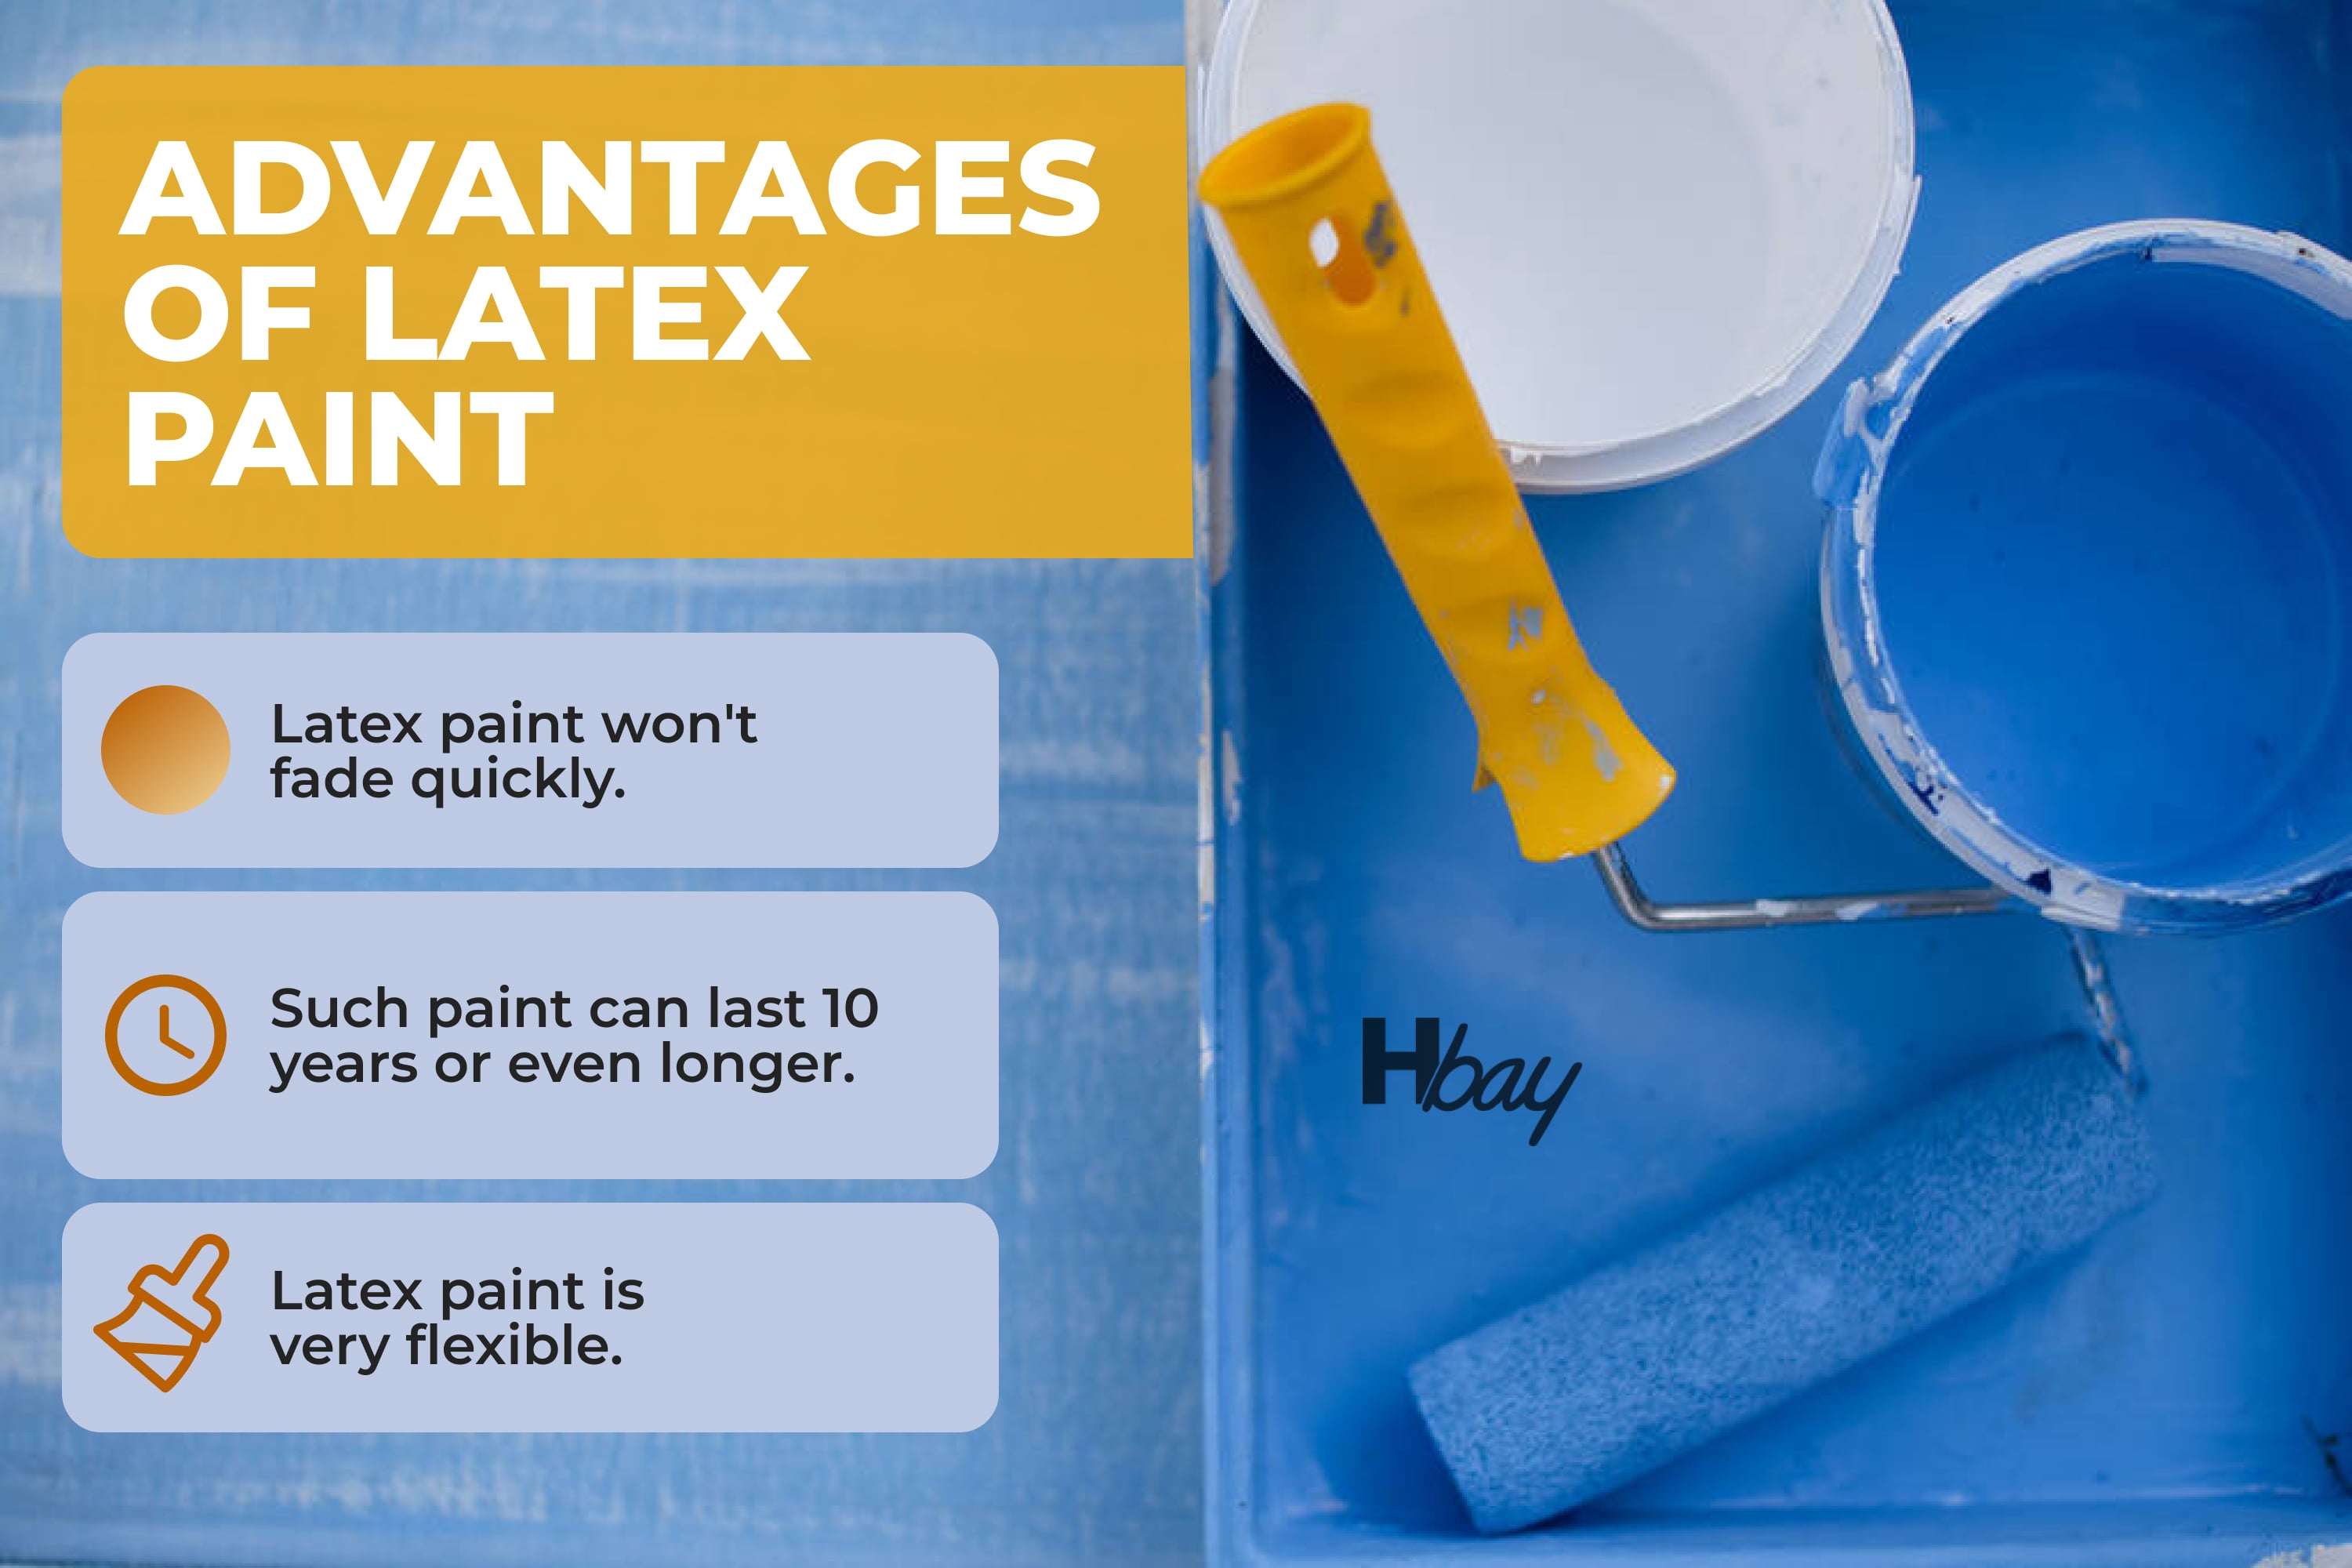 Advantages of latex paint